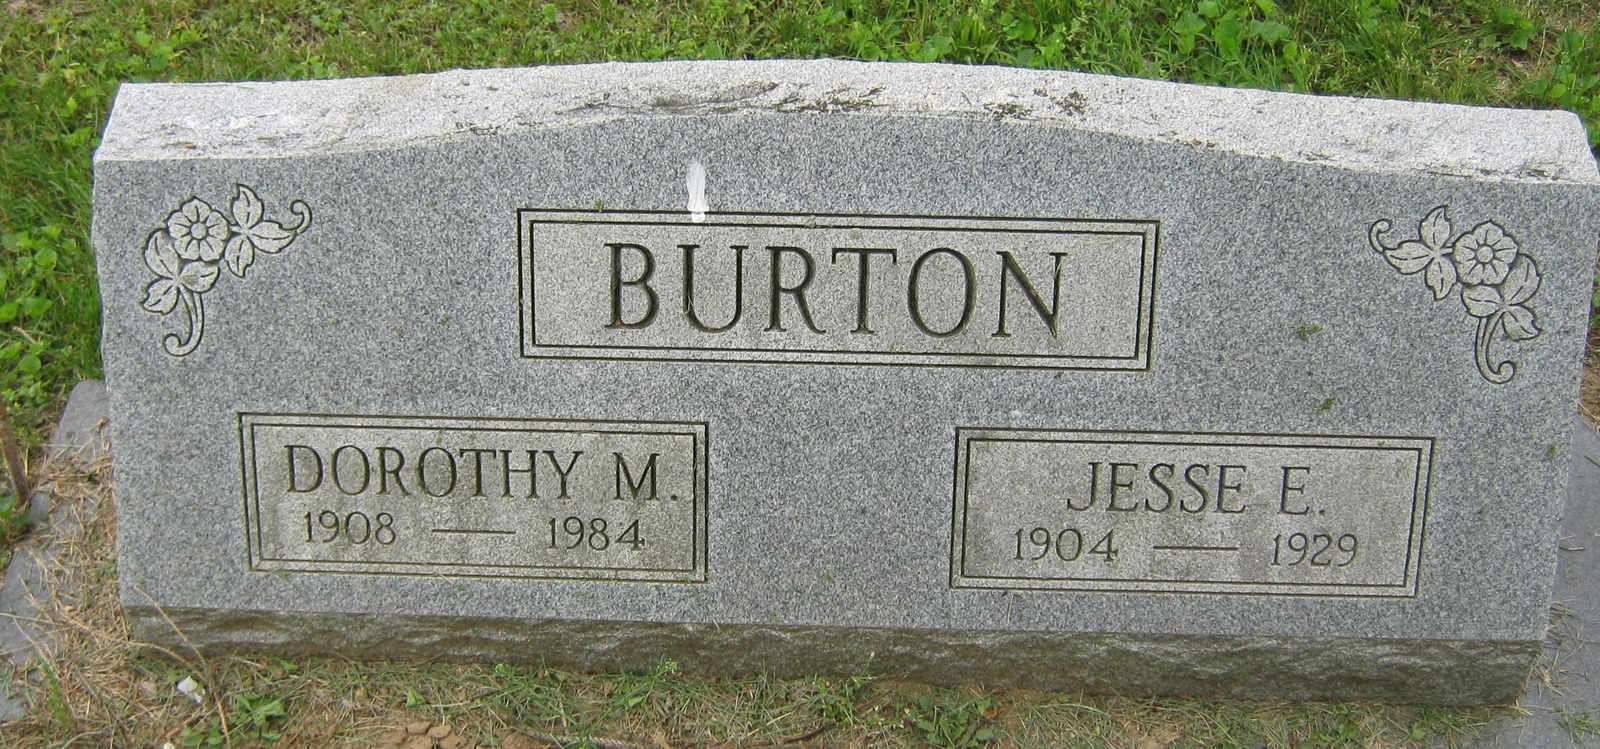 Dorothy M Burton